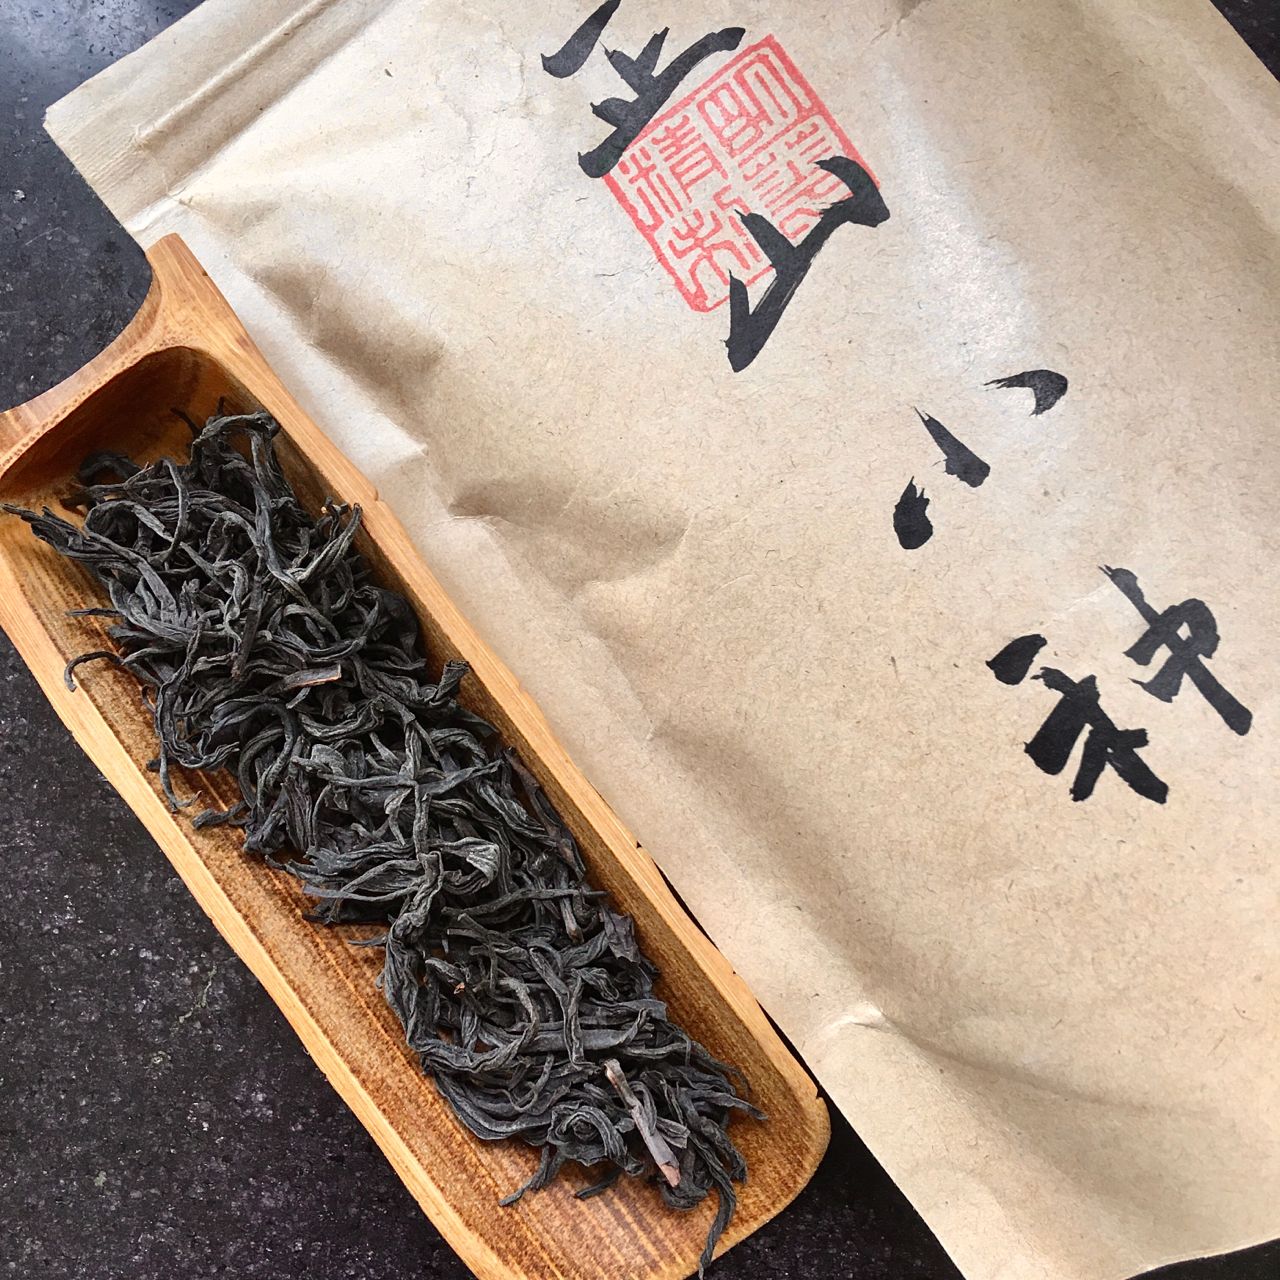 Zhèngshān Xiǎozhǒng Hóng Chá, 正山小种红茶, Lapsang Souchong Black Tea